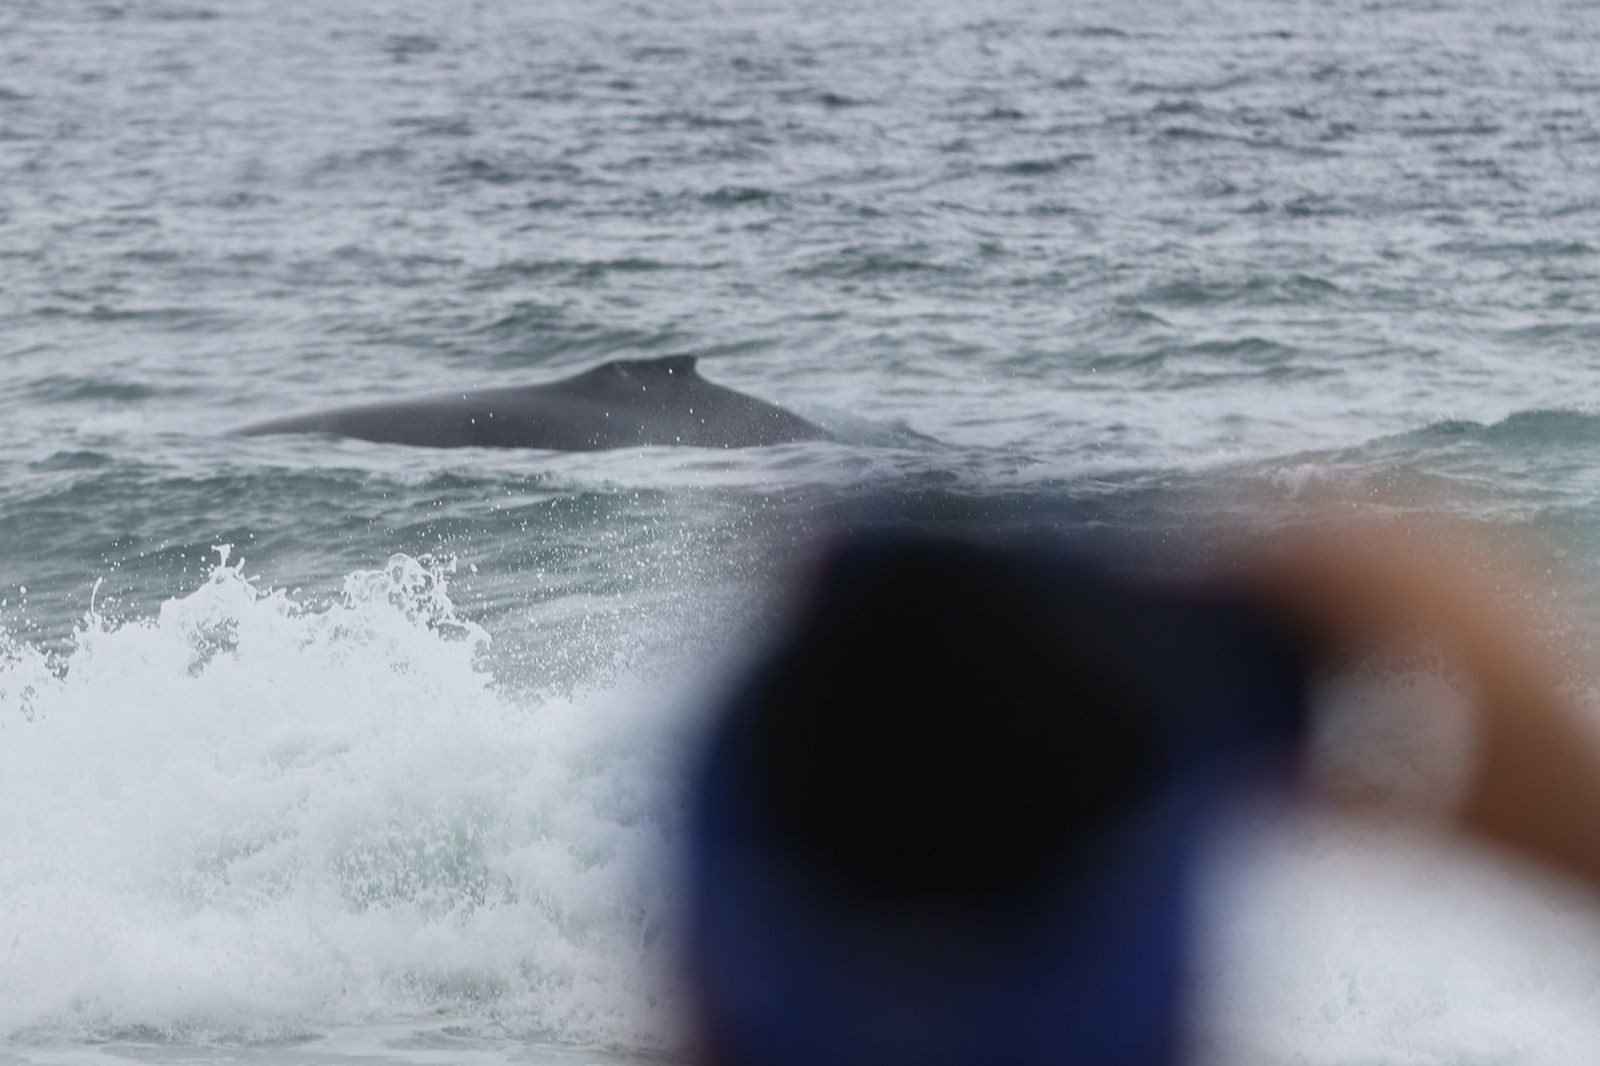 Pessoas observam o aparecimento de uma baleia em Ipanema